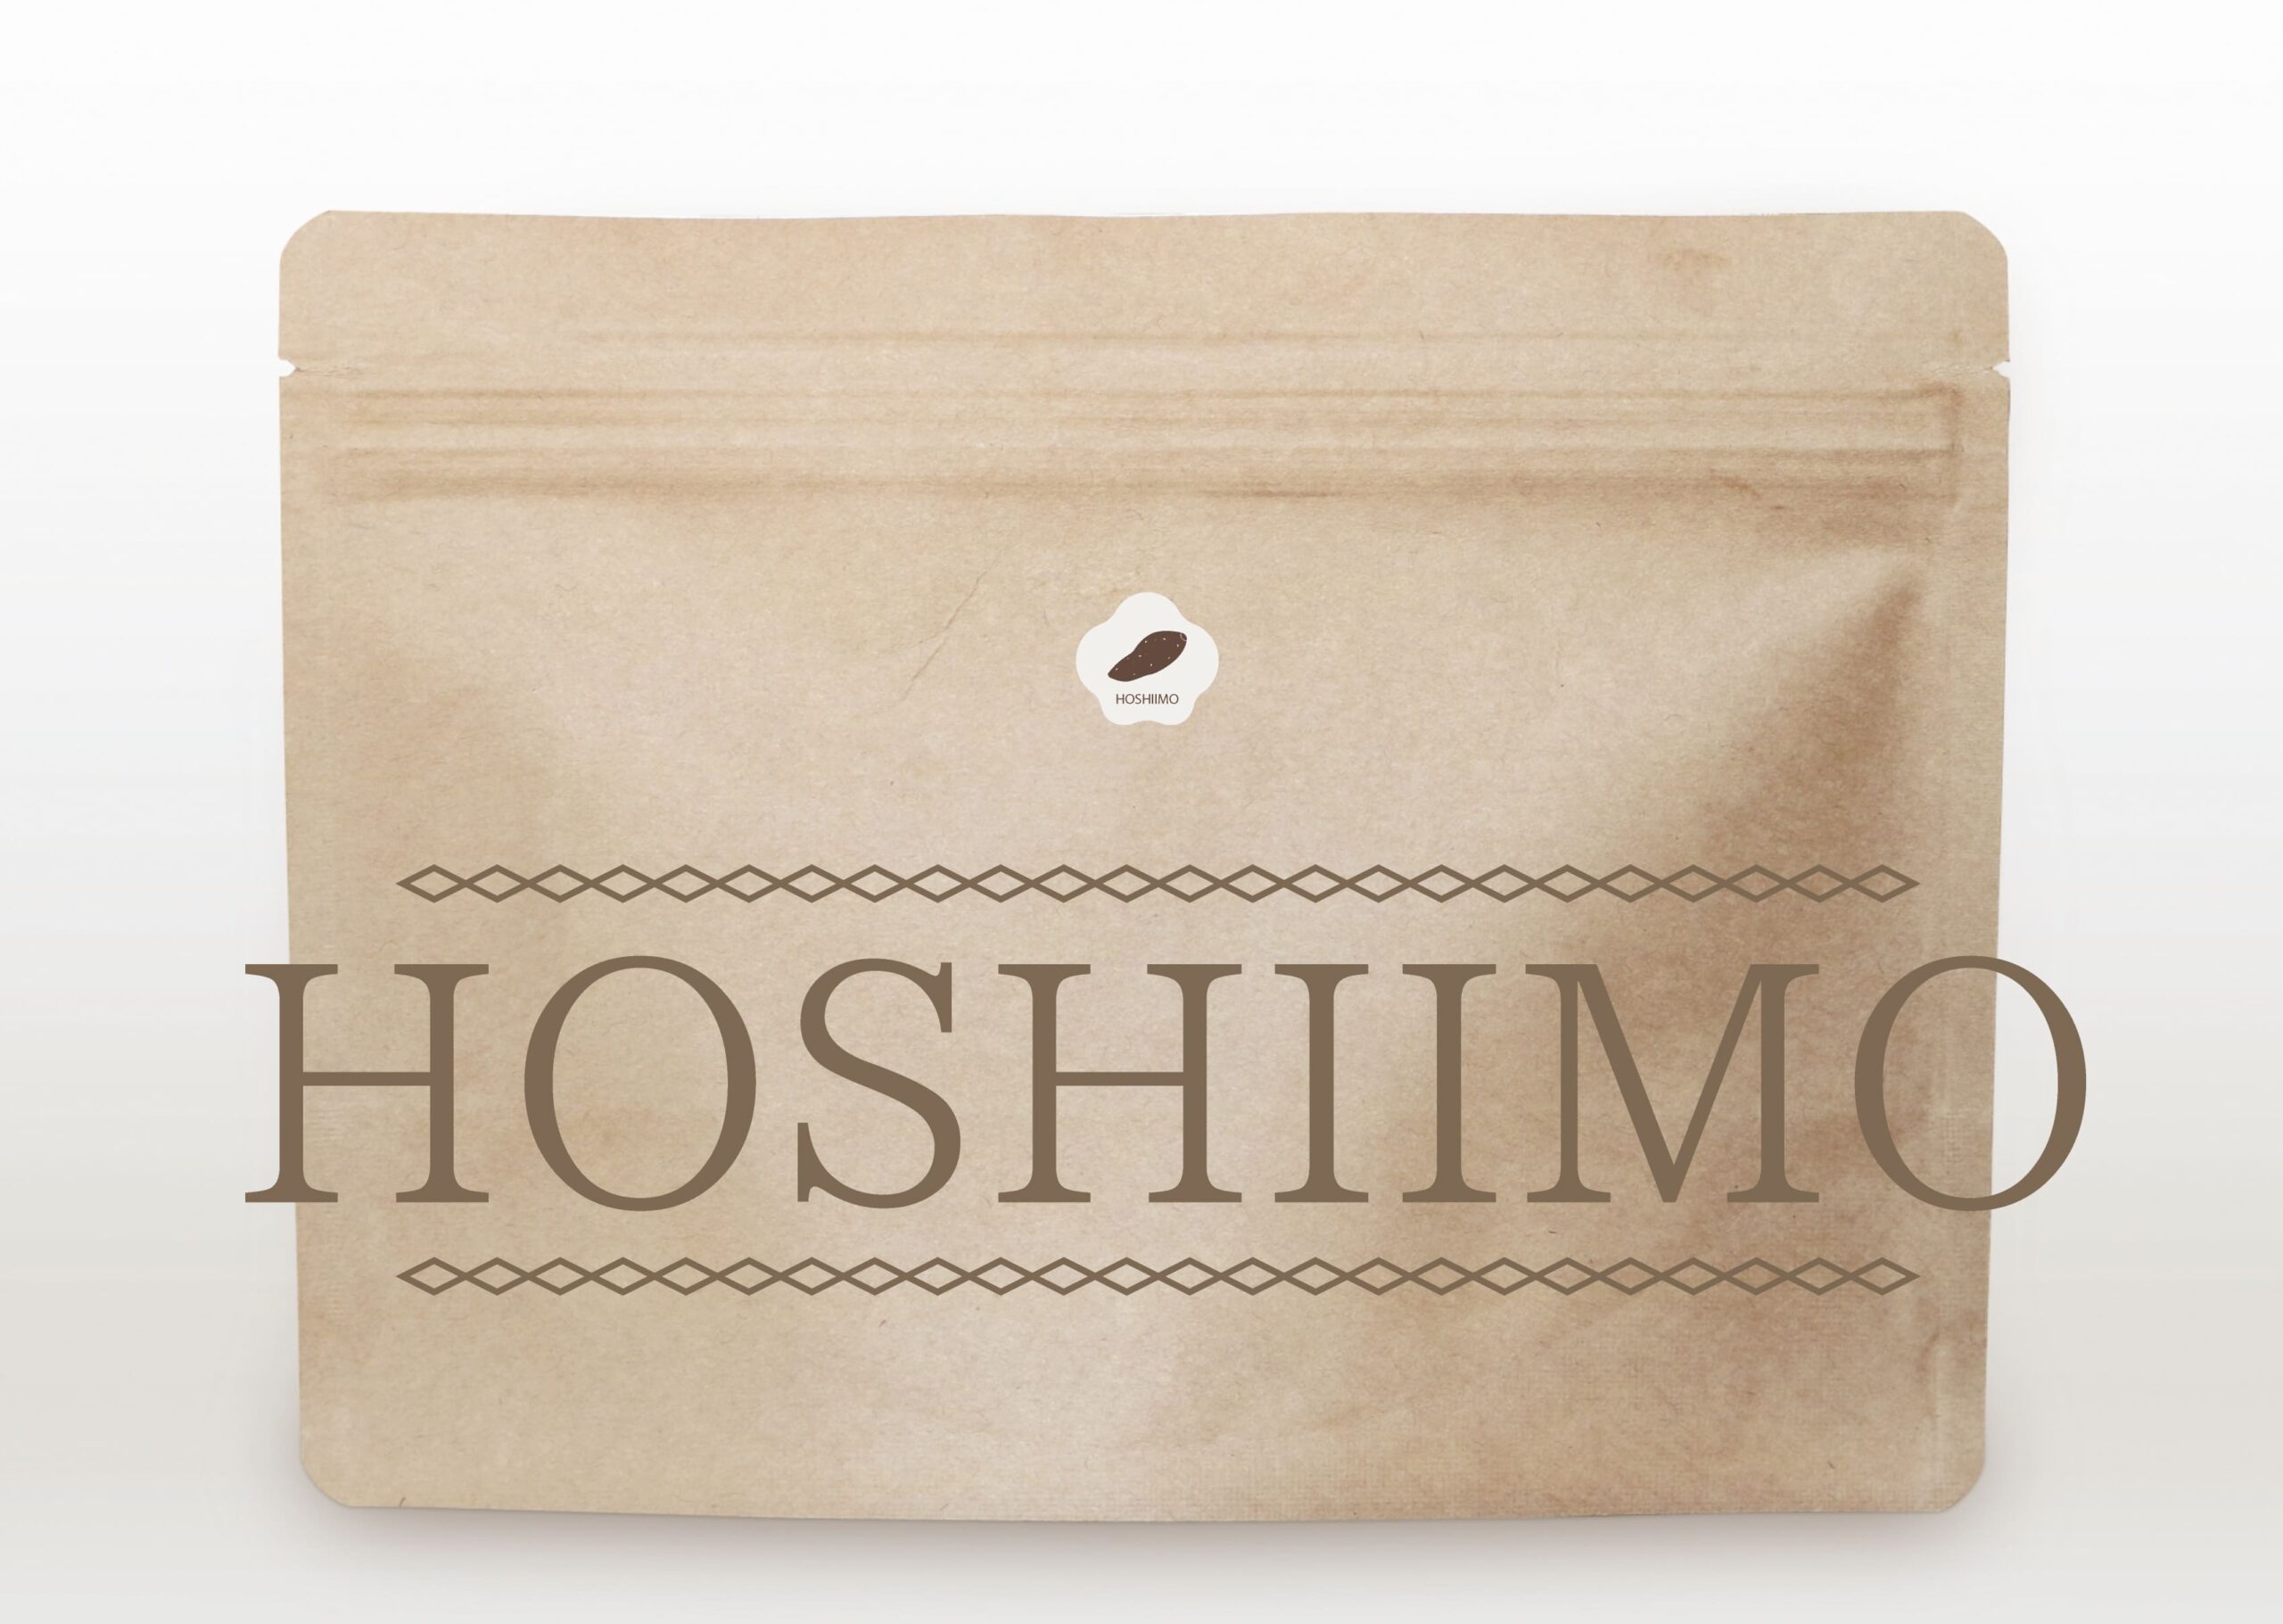 hoshiimo-002